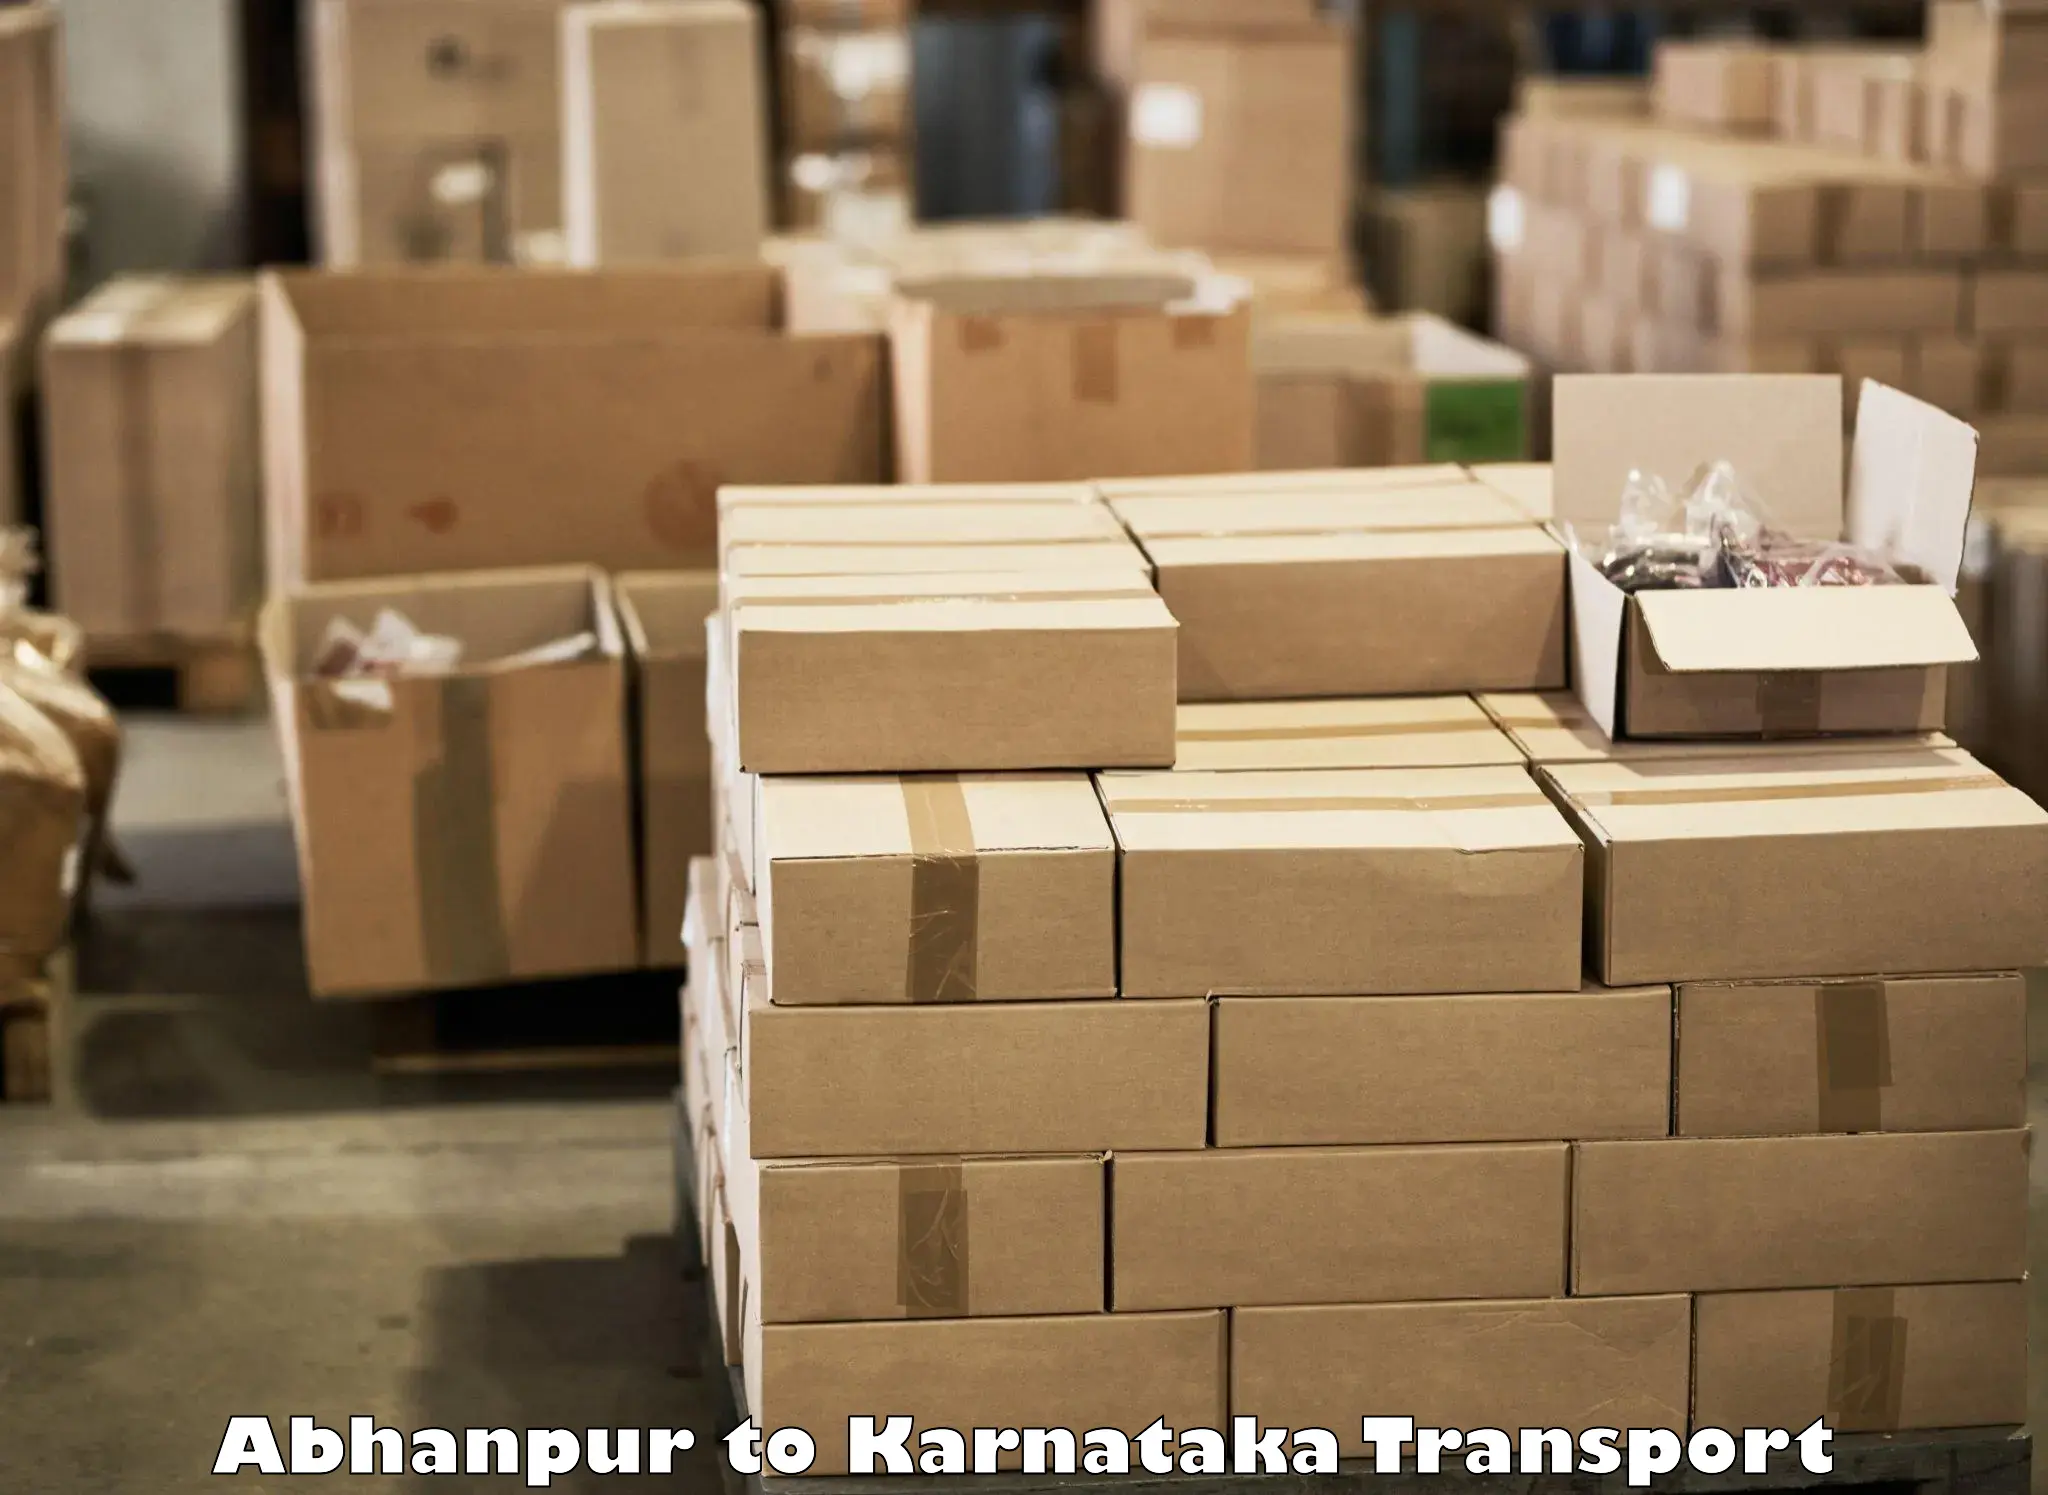 Two wheeler parcel service Abhanpur to Kalaburagi